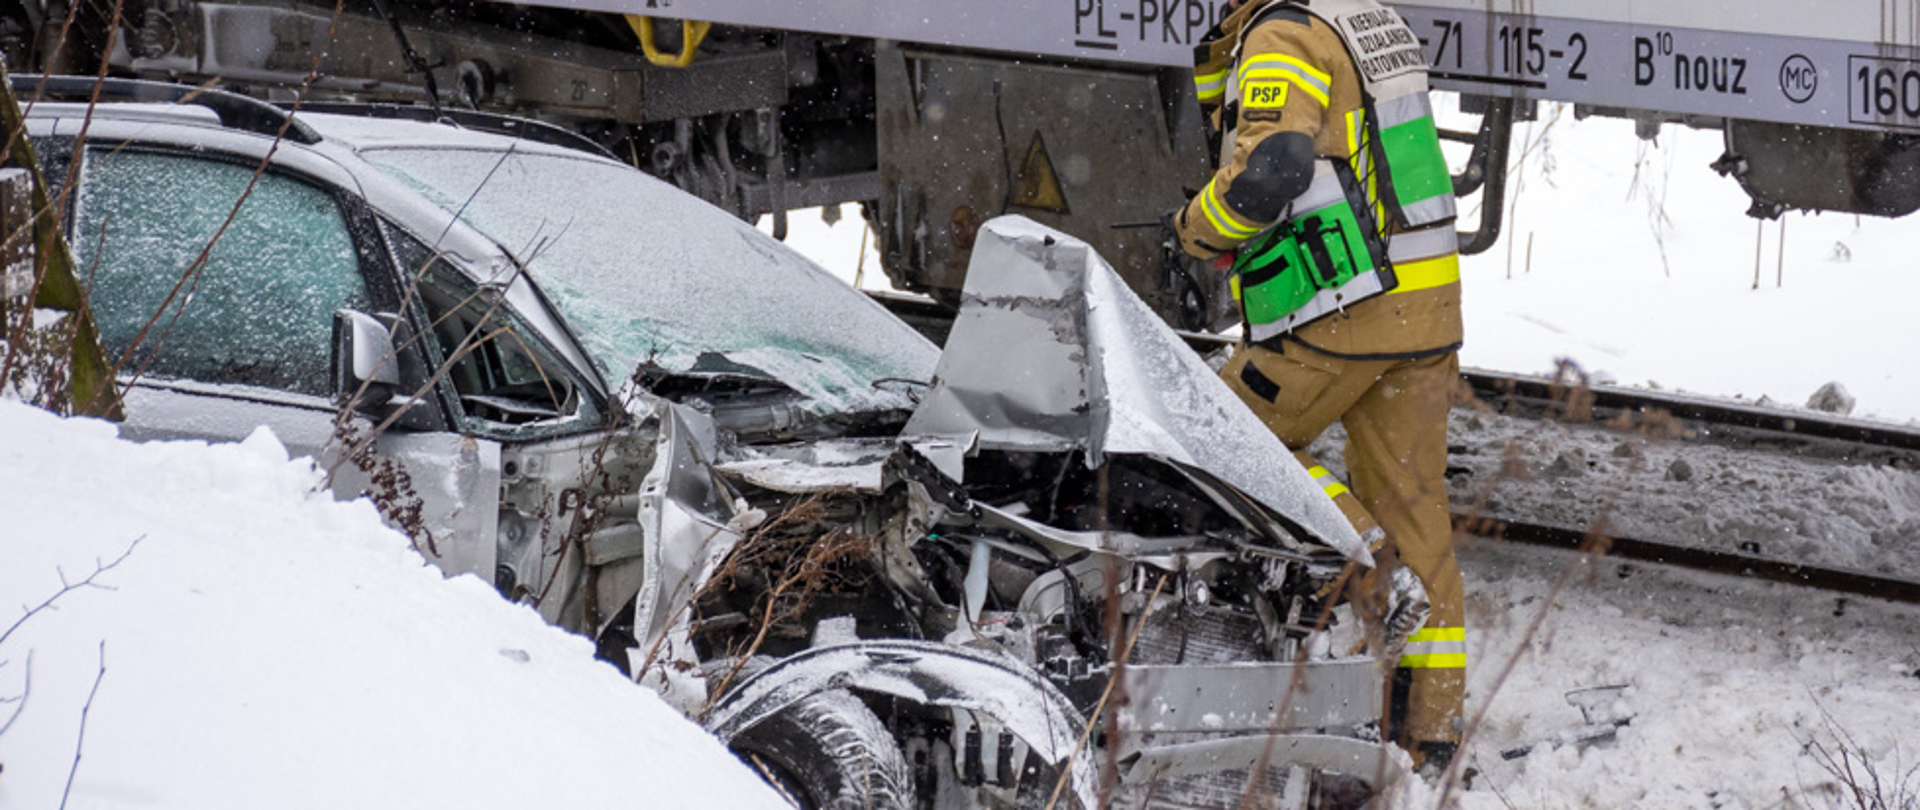 Zdjęcie przedstawia zniszczony samochód koloru srebrnego po zderzeniu z pociągiem w miejscowości Poronin koło Zakopanego. W tle widać strażaka oraz pociąg. Na zdjęciu widać również śnieg.